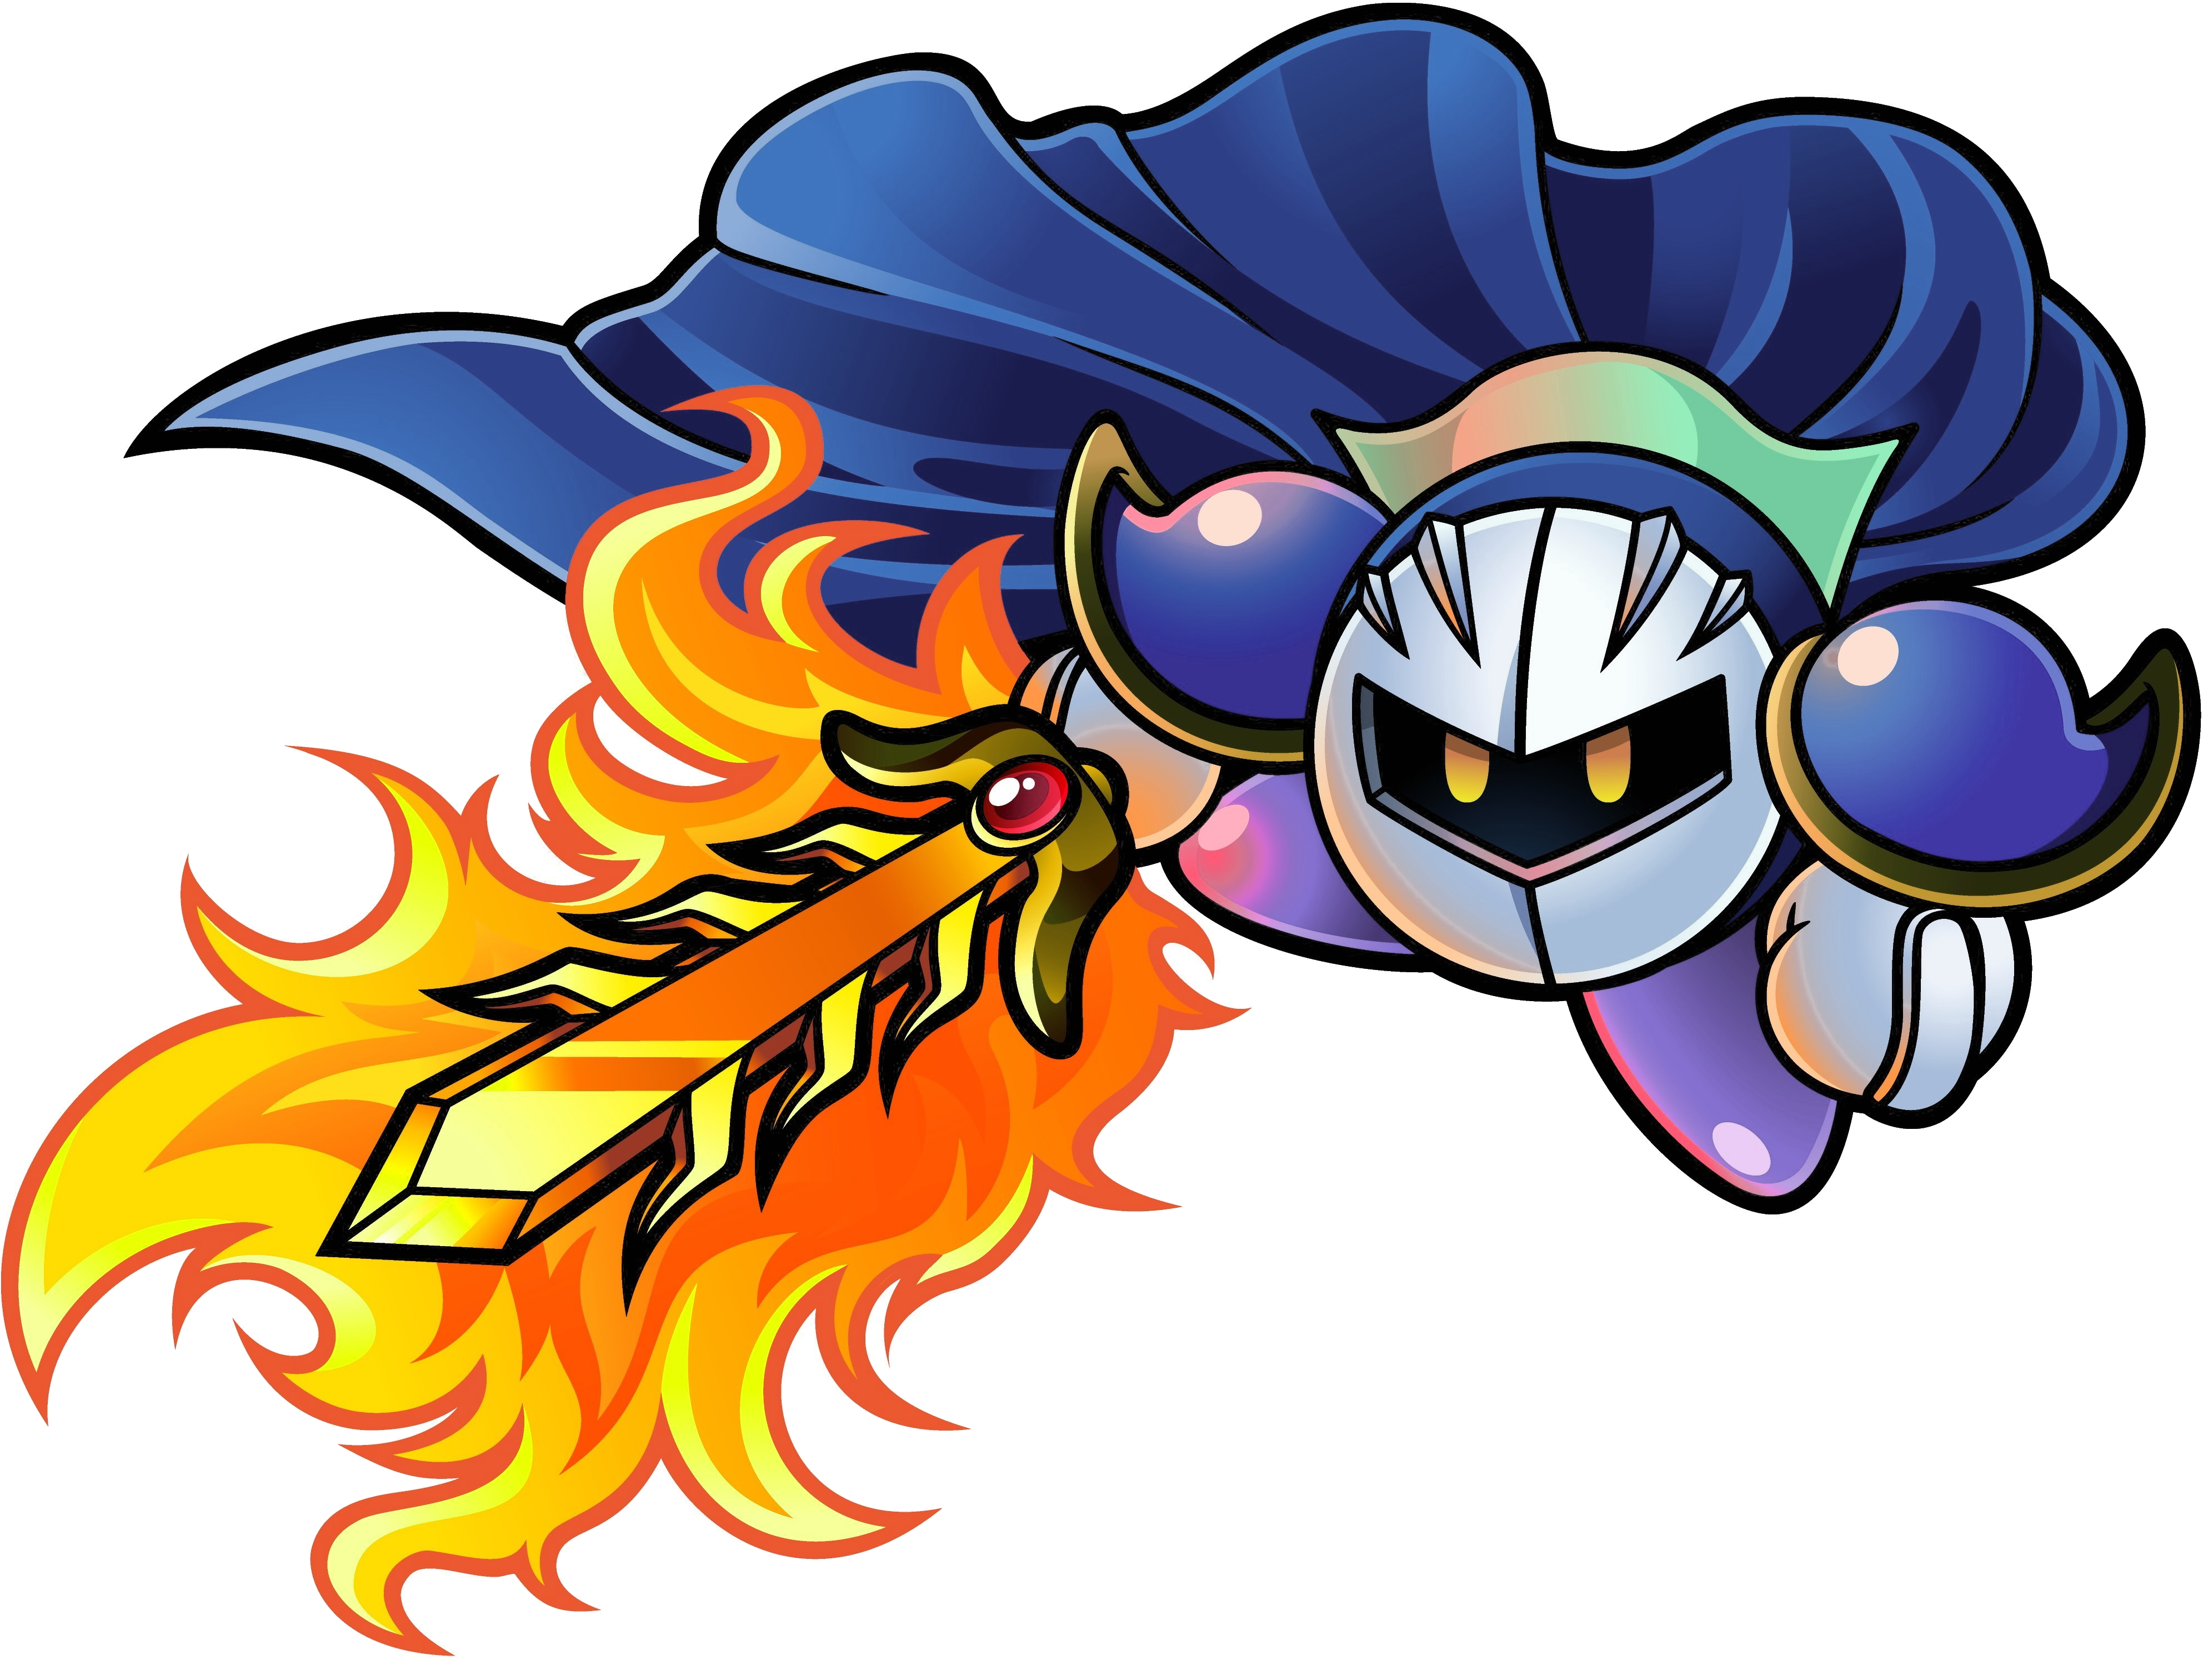 Galaxia - Kirby Super Star Ultra Meta Knight (4040x3080)